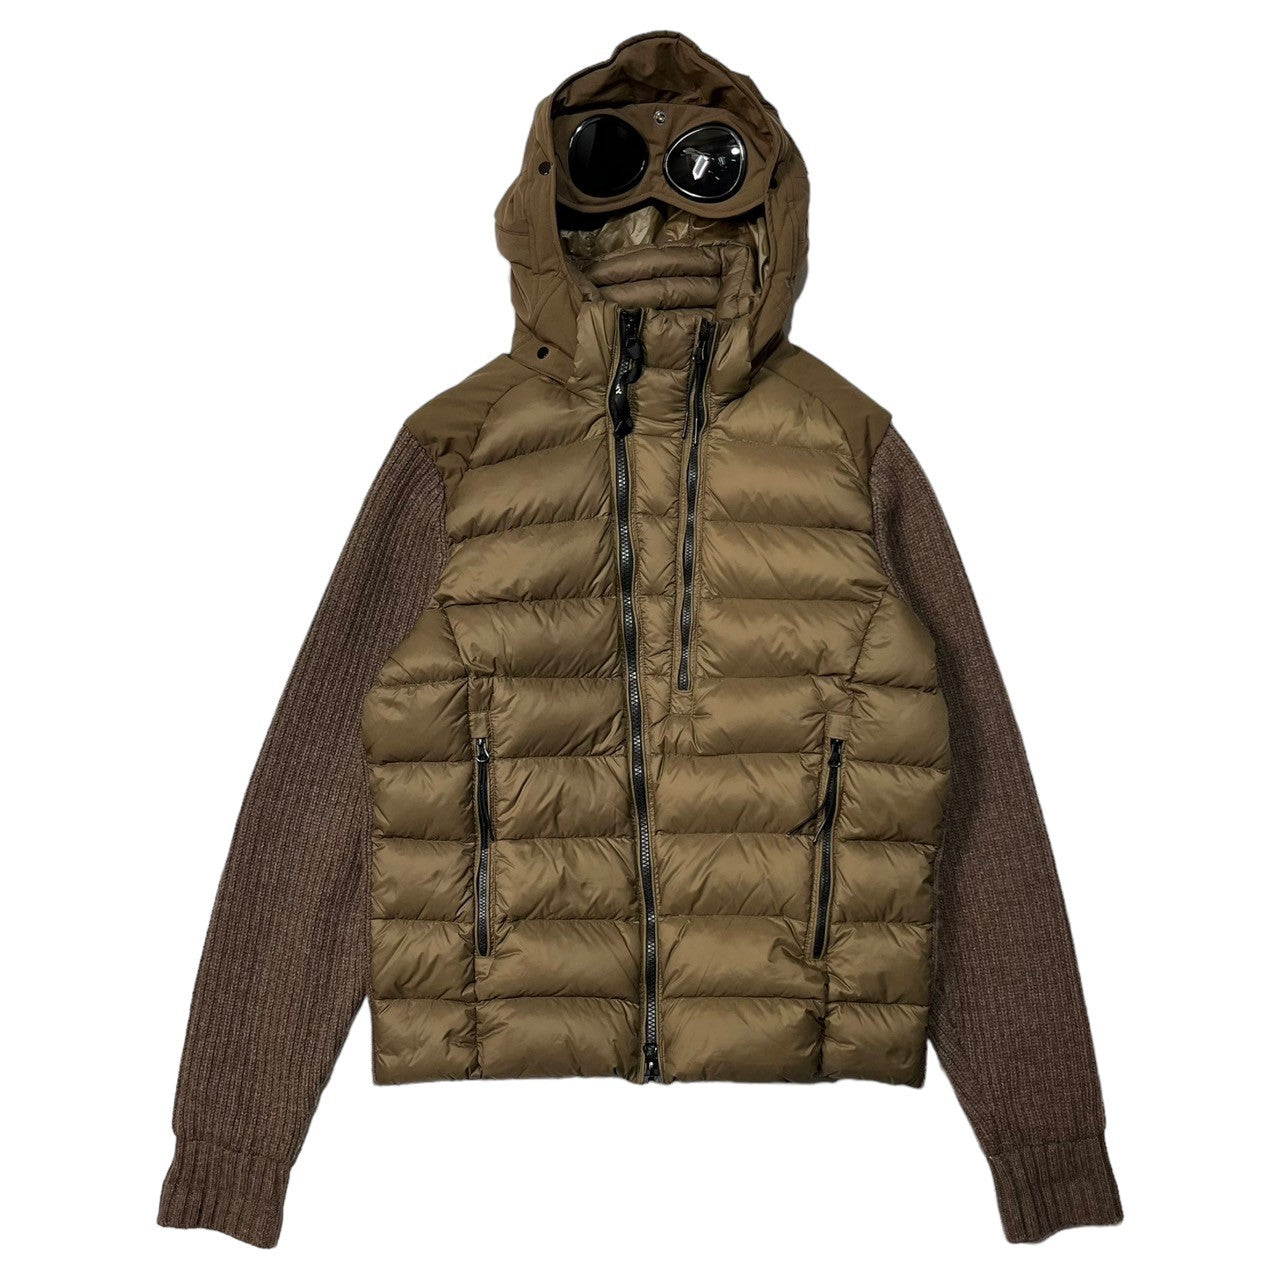 C.P.COMPANY(シーピーカンパニー) goggle down knit jacket ゴーグル ダウン ニット ジャケット マウンテンパーカー  05CMKN024A 48(L程度) ブラウン